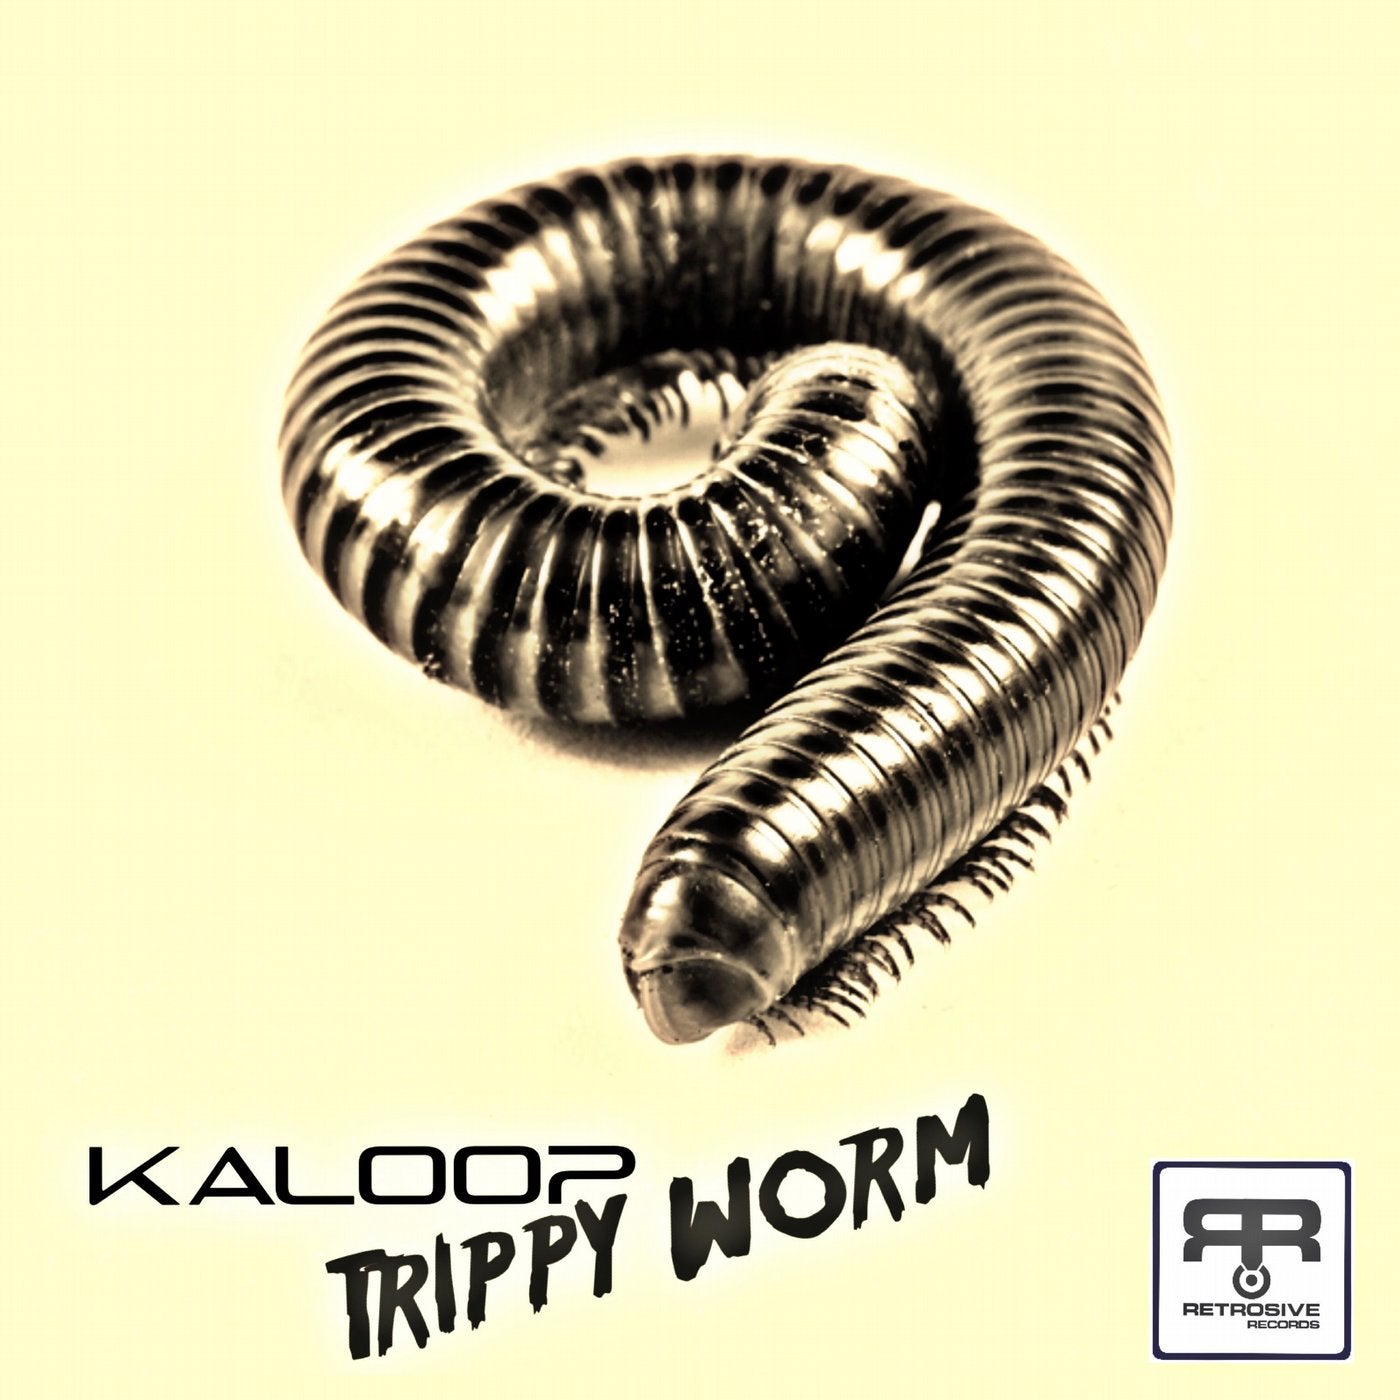 Trippy Worm